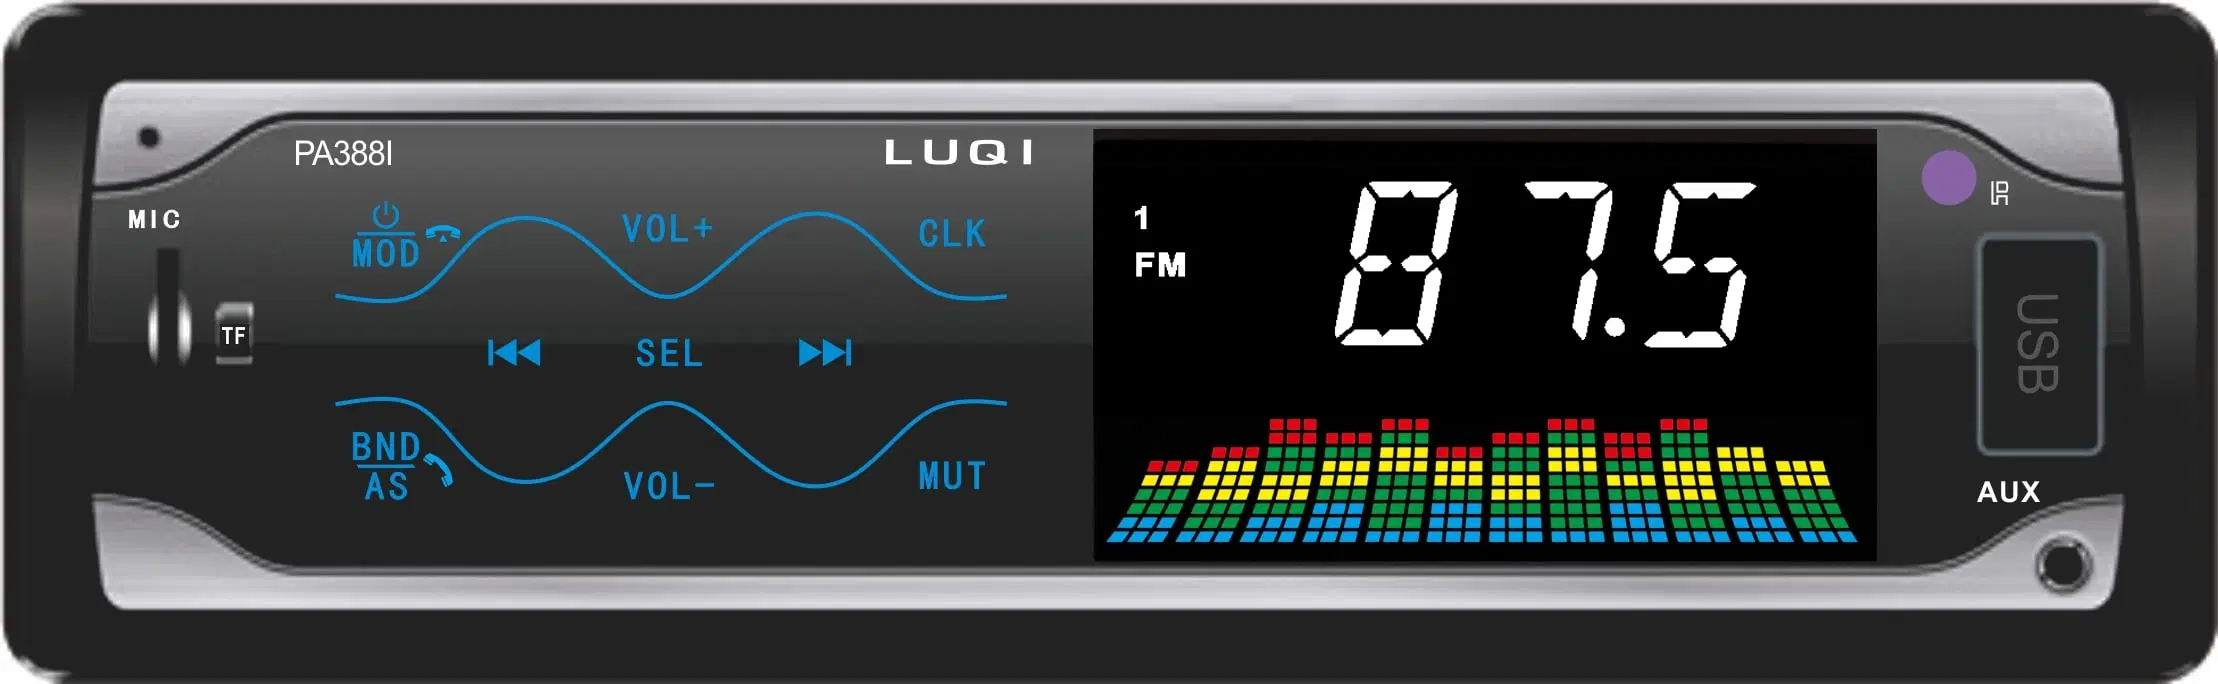 Нажмите кнопку автомобильная электроника мультимедиа в формате MP3 плеер с FM-радио